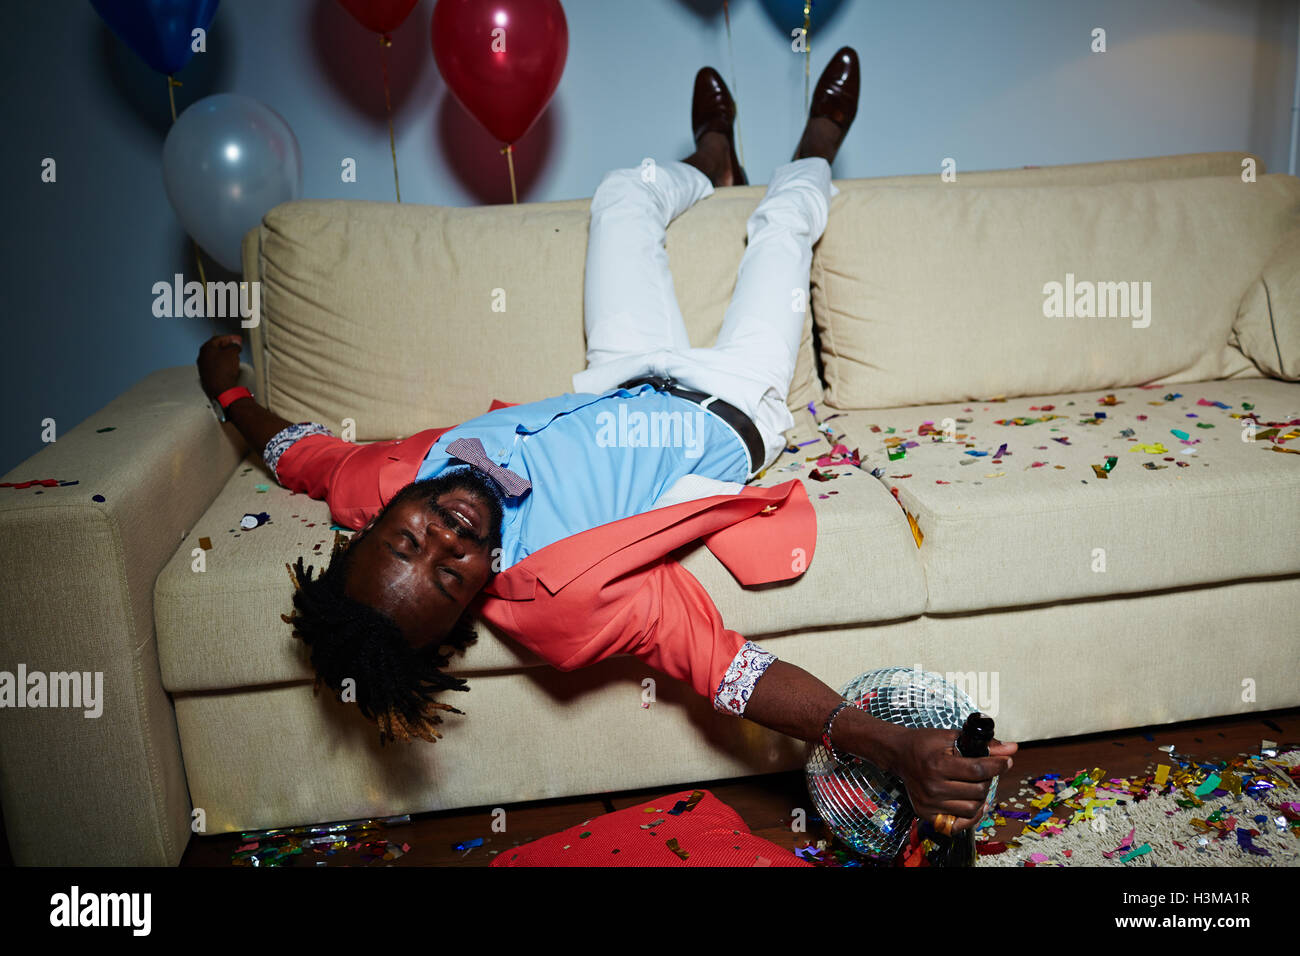 Ubriaco guy con bottiglia di champagne sdraiato sul divano in camera disordinato after party Foto Stock